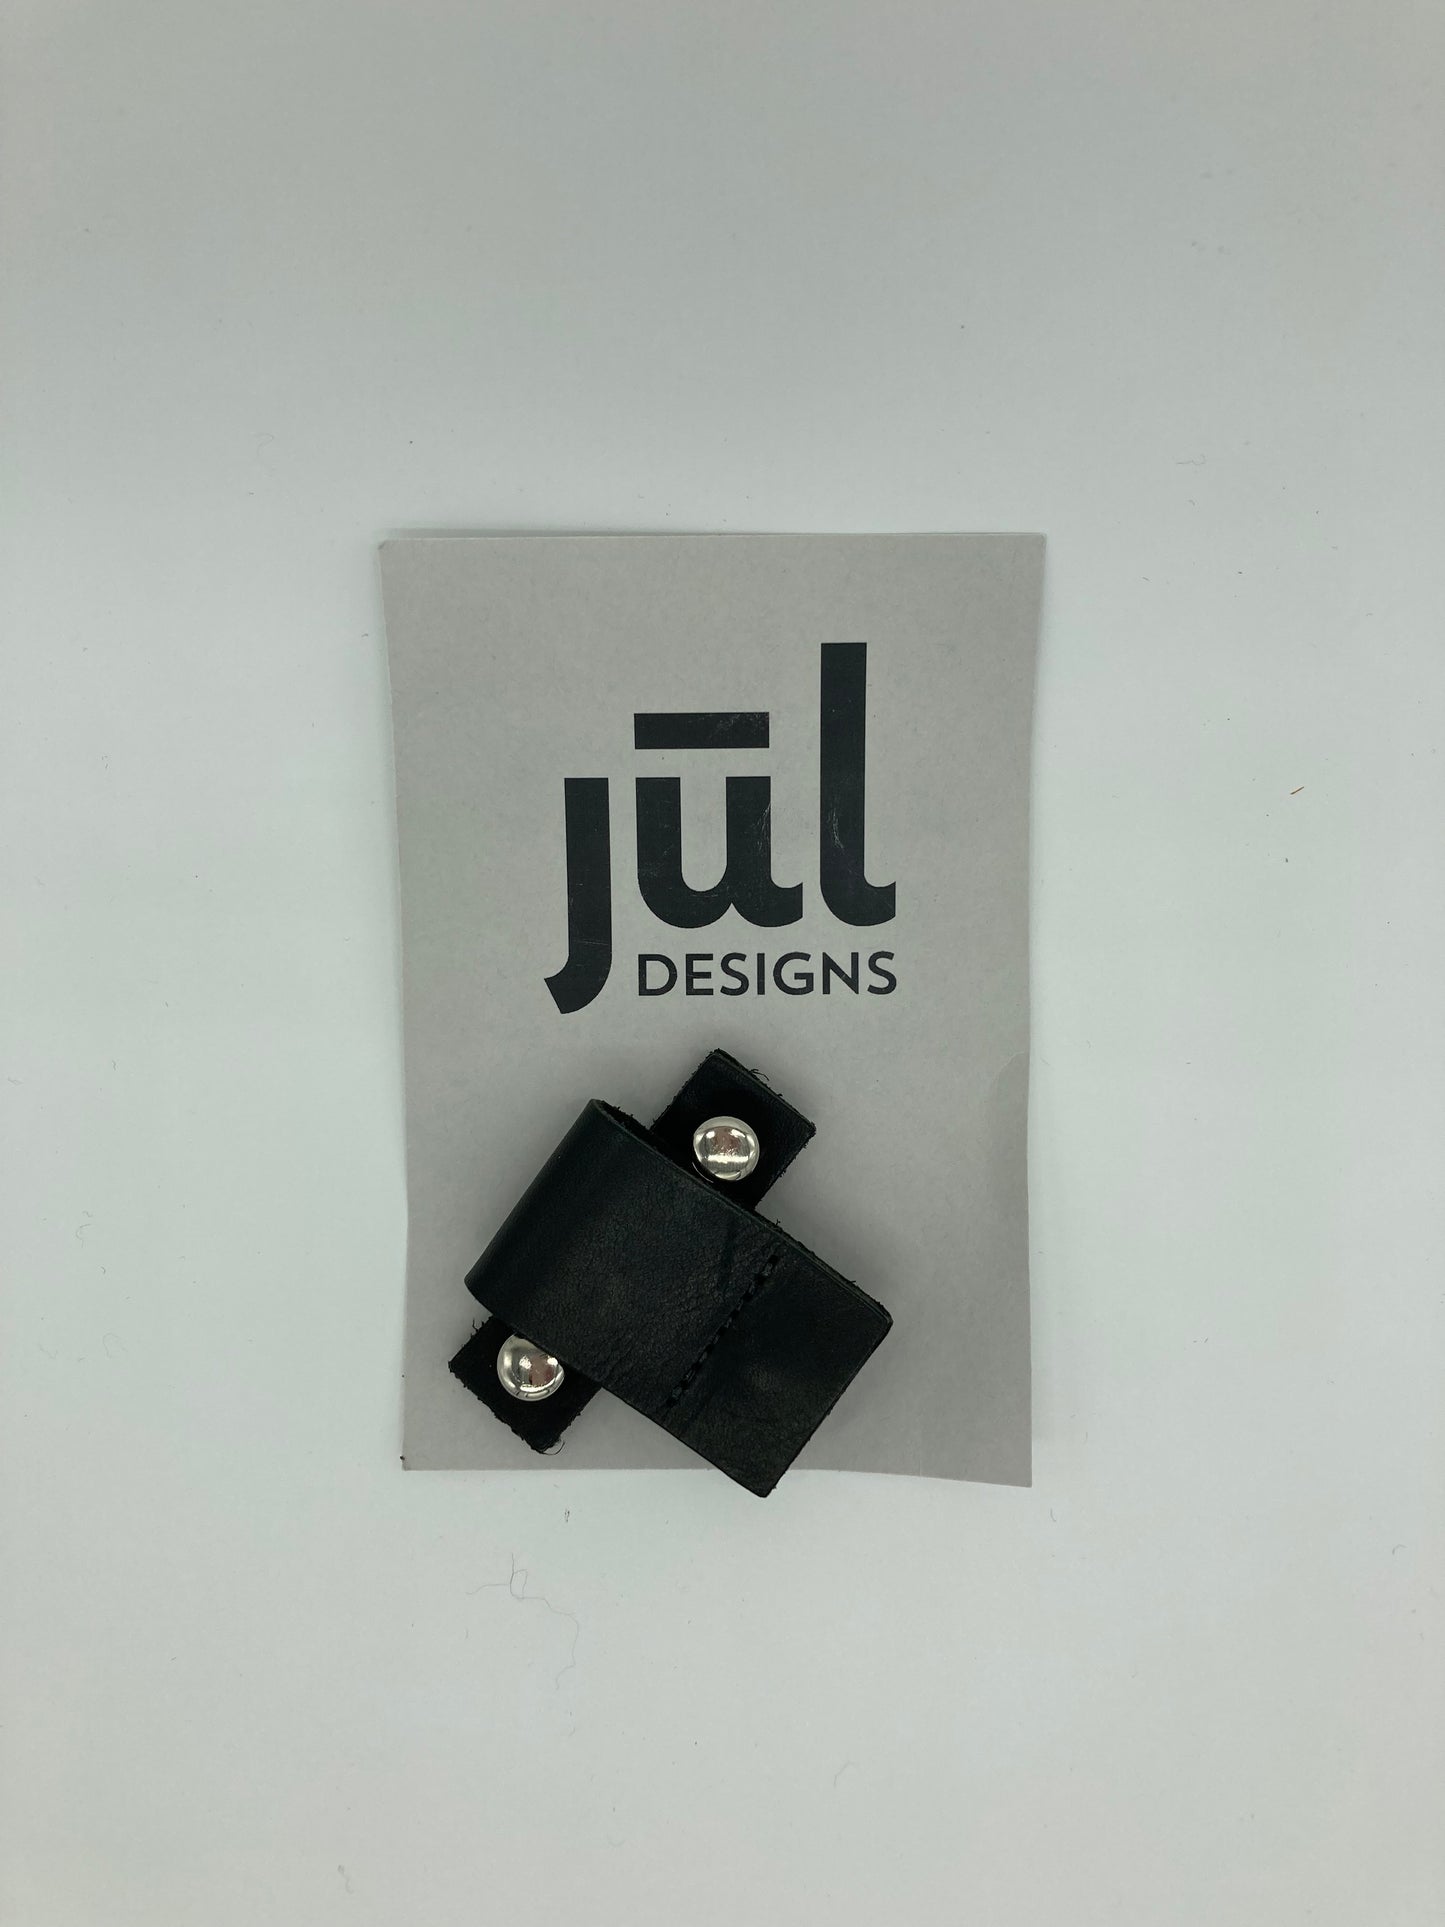 Jul Designs Screw-In Leather Closures